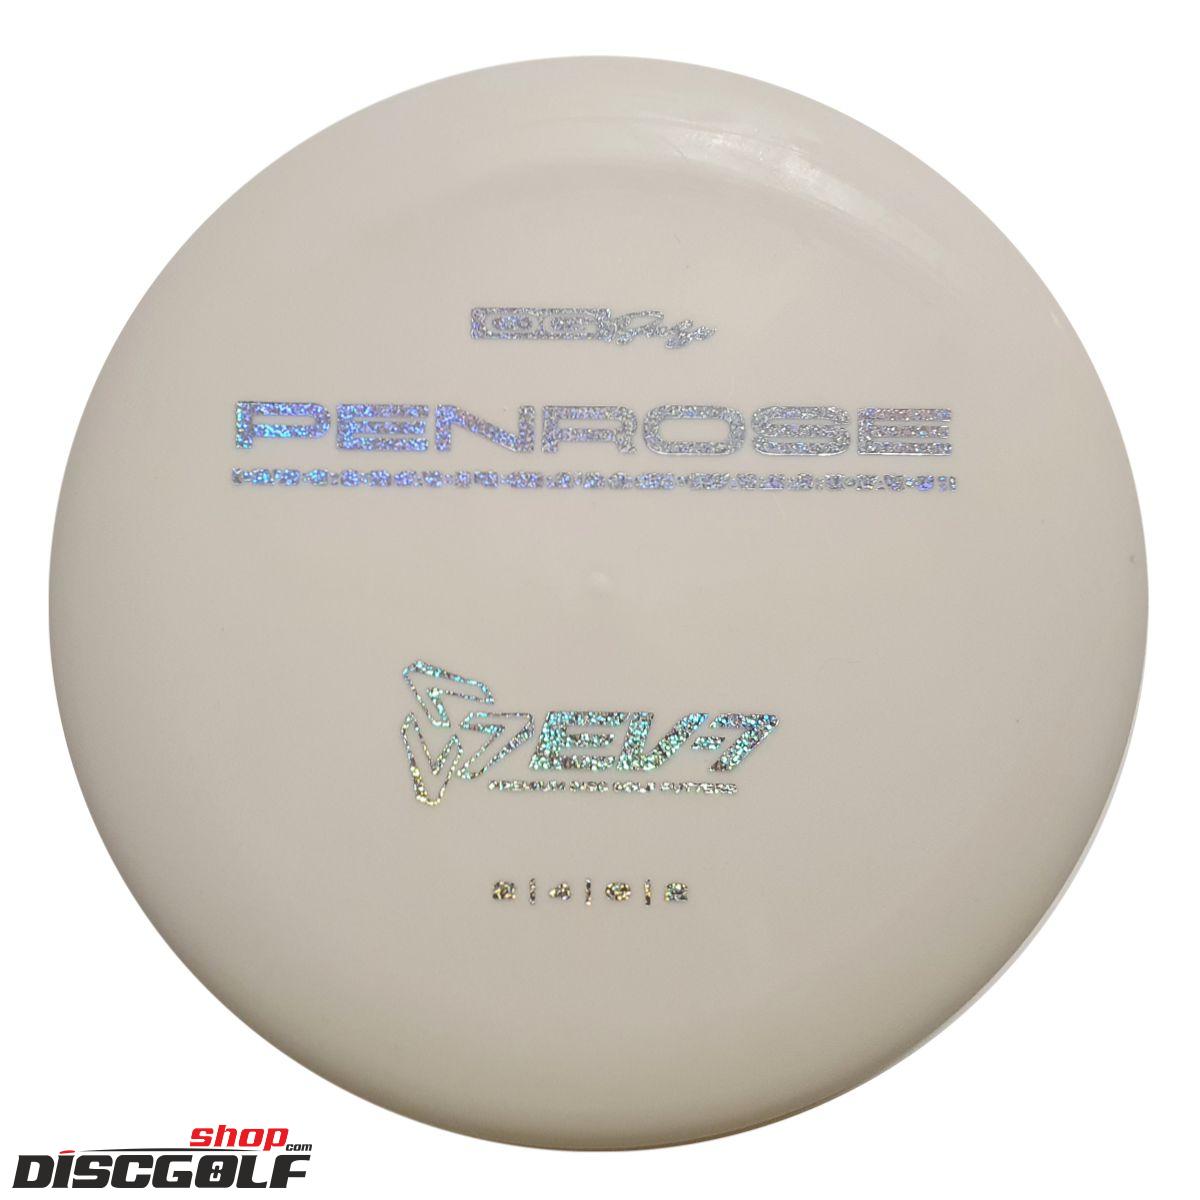 EV-7 Penrose OG Soft (discgolf)